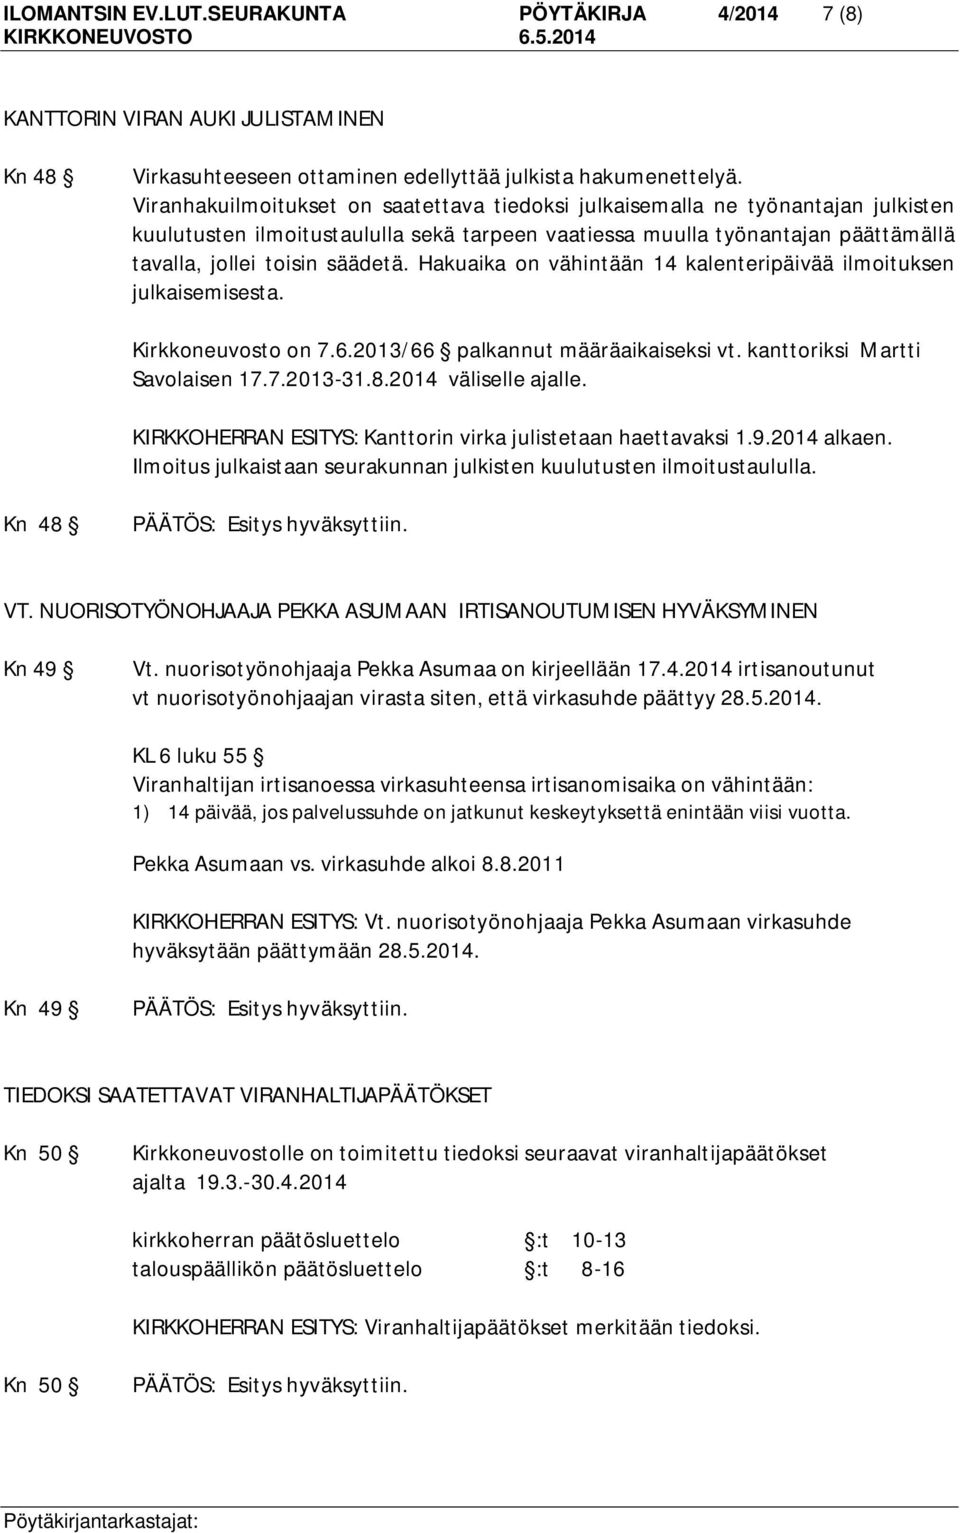 Hakuaika on vähintään 14 kalenteripäivää ilmoituksen julkaisemisesta. Kirkkoneuvosto on 7.6.2013/66 palkannut määräaikaiseksi vt. kanttoriksi Martti Savolaisen 17.7.2013-31.8.2014 väliselle ajalle.